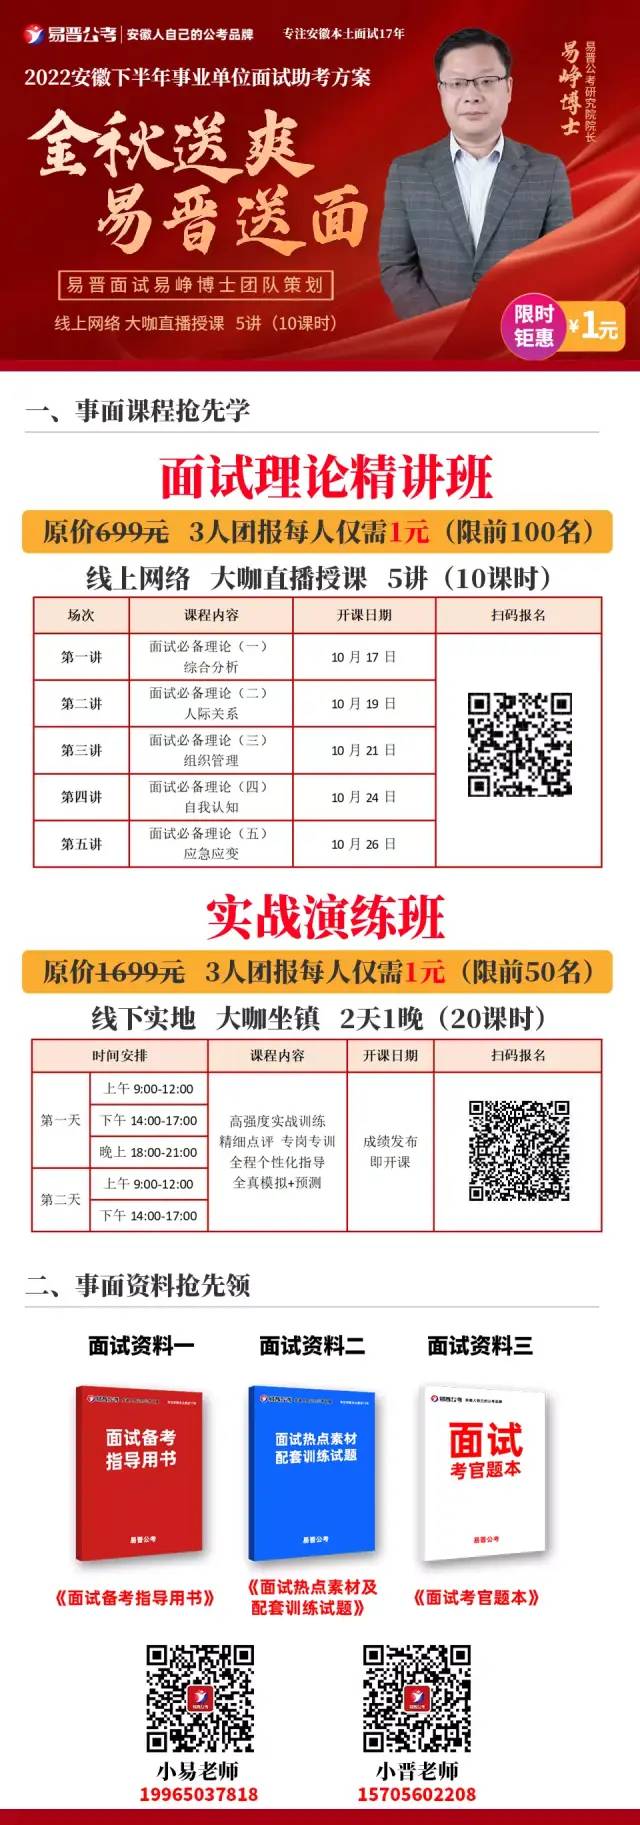 安庆市事业单位报名时间